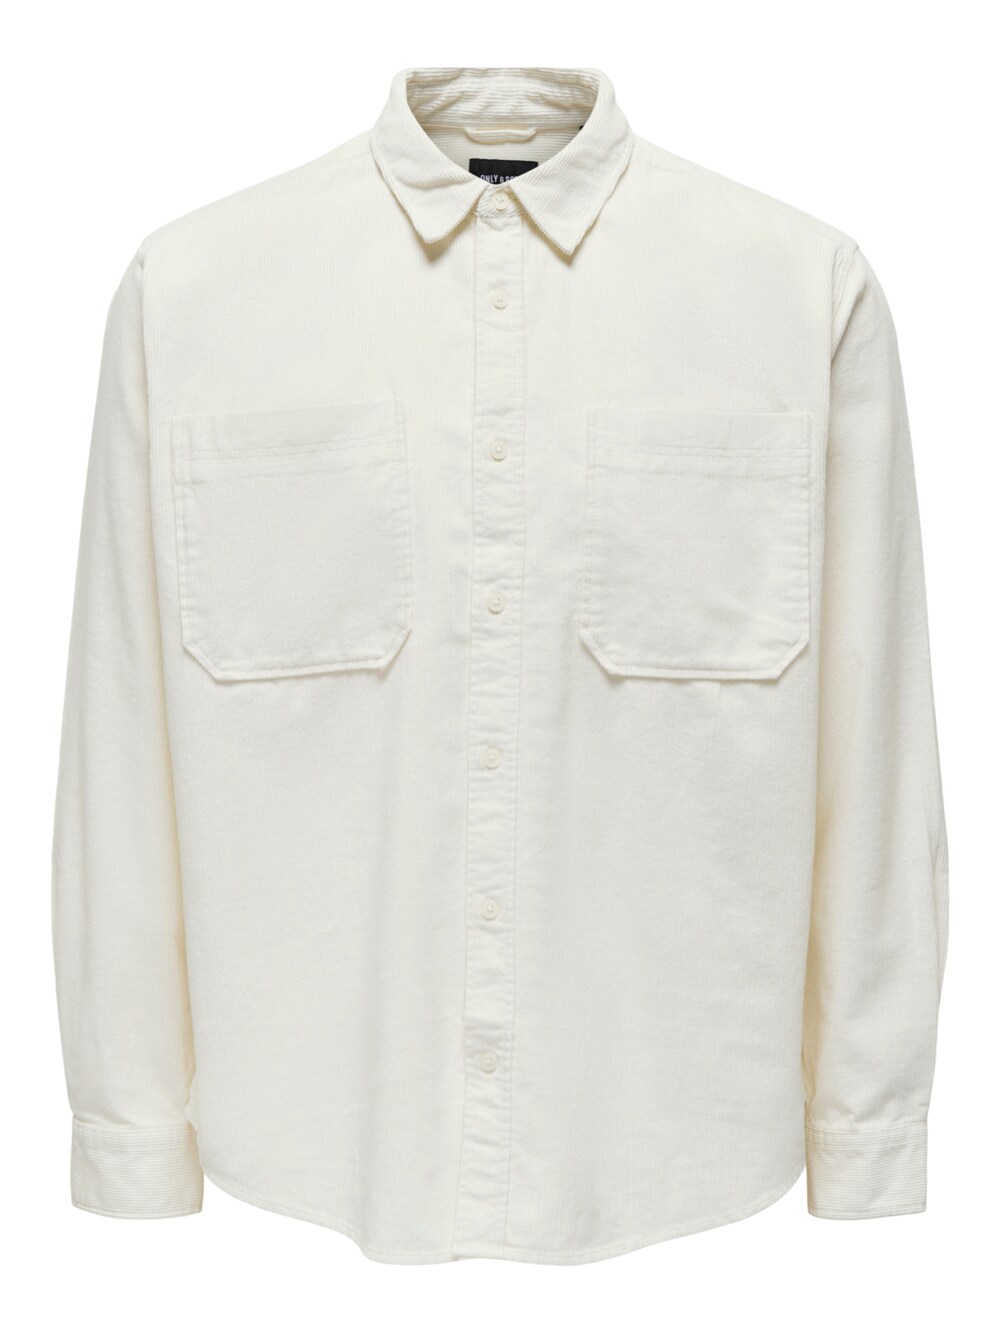 Рубашка на пуговицах стандартного кроя Only & Sons Alp, шерсть белая